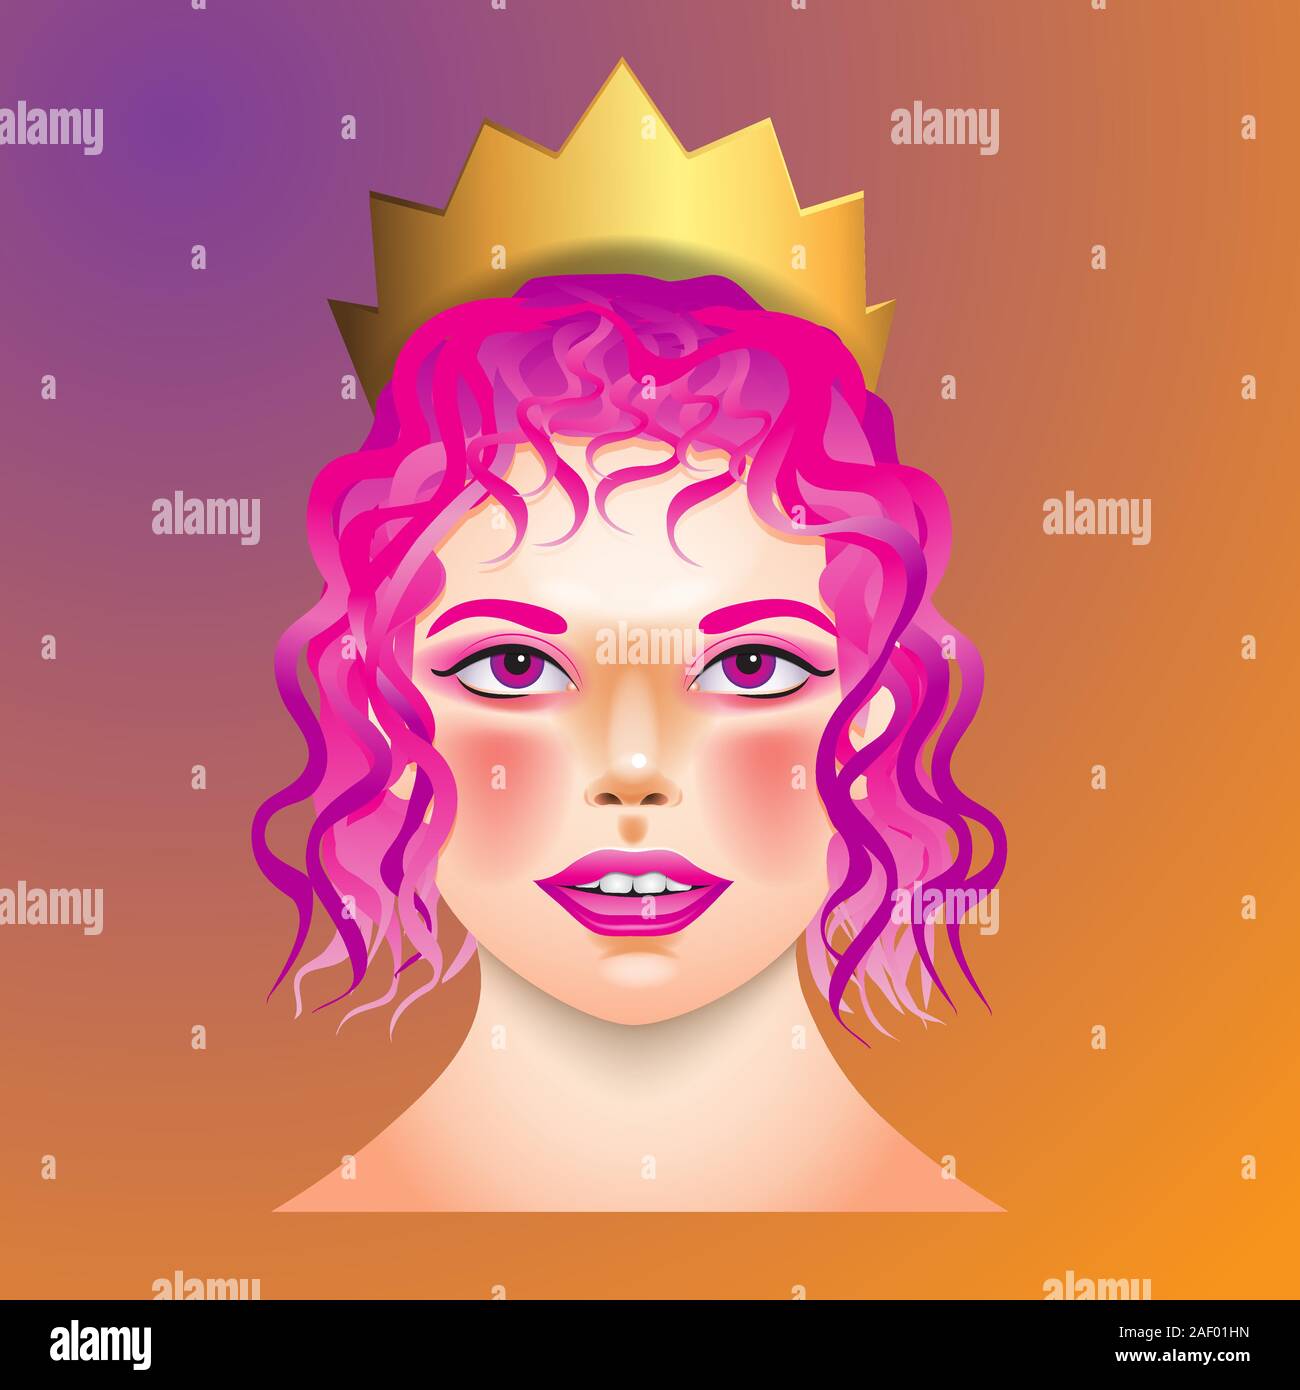 Le visage d'une femme avec une couronne sur sa tête sur un fond isolé. Image vectorielle Illustration de Vecteur